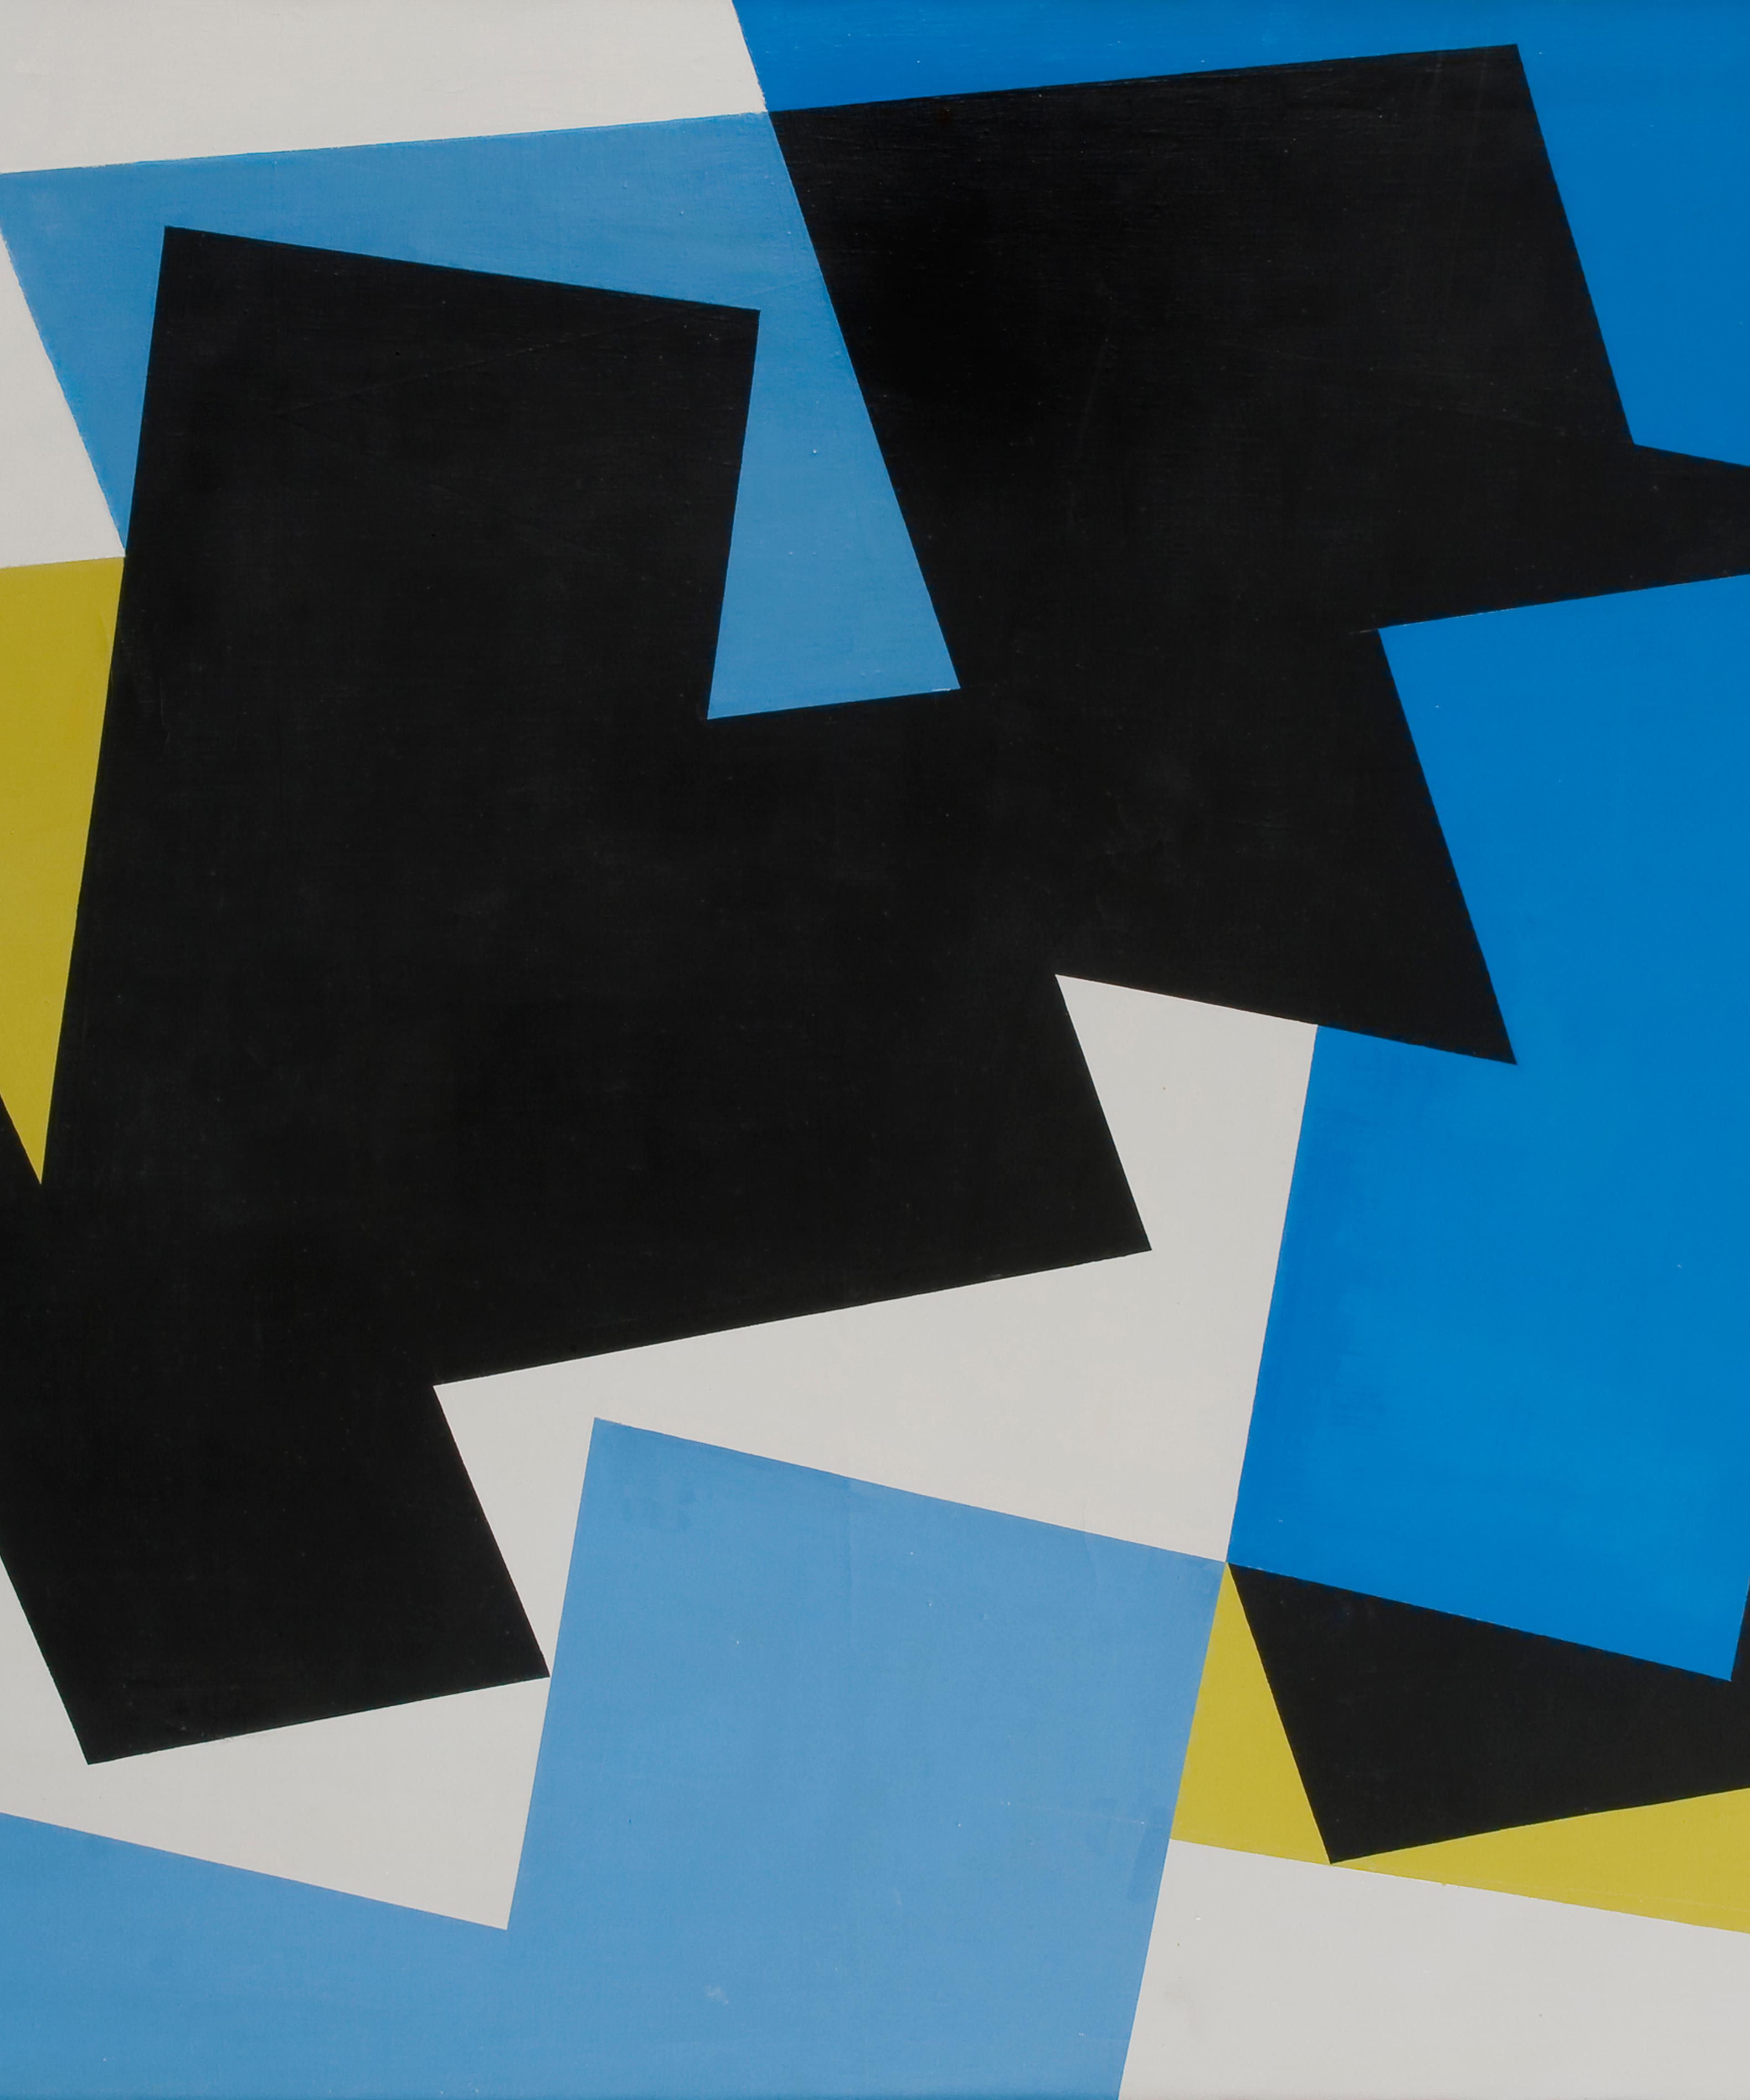 Et abstrakt maleri med geometriske former i mange farger